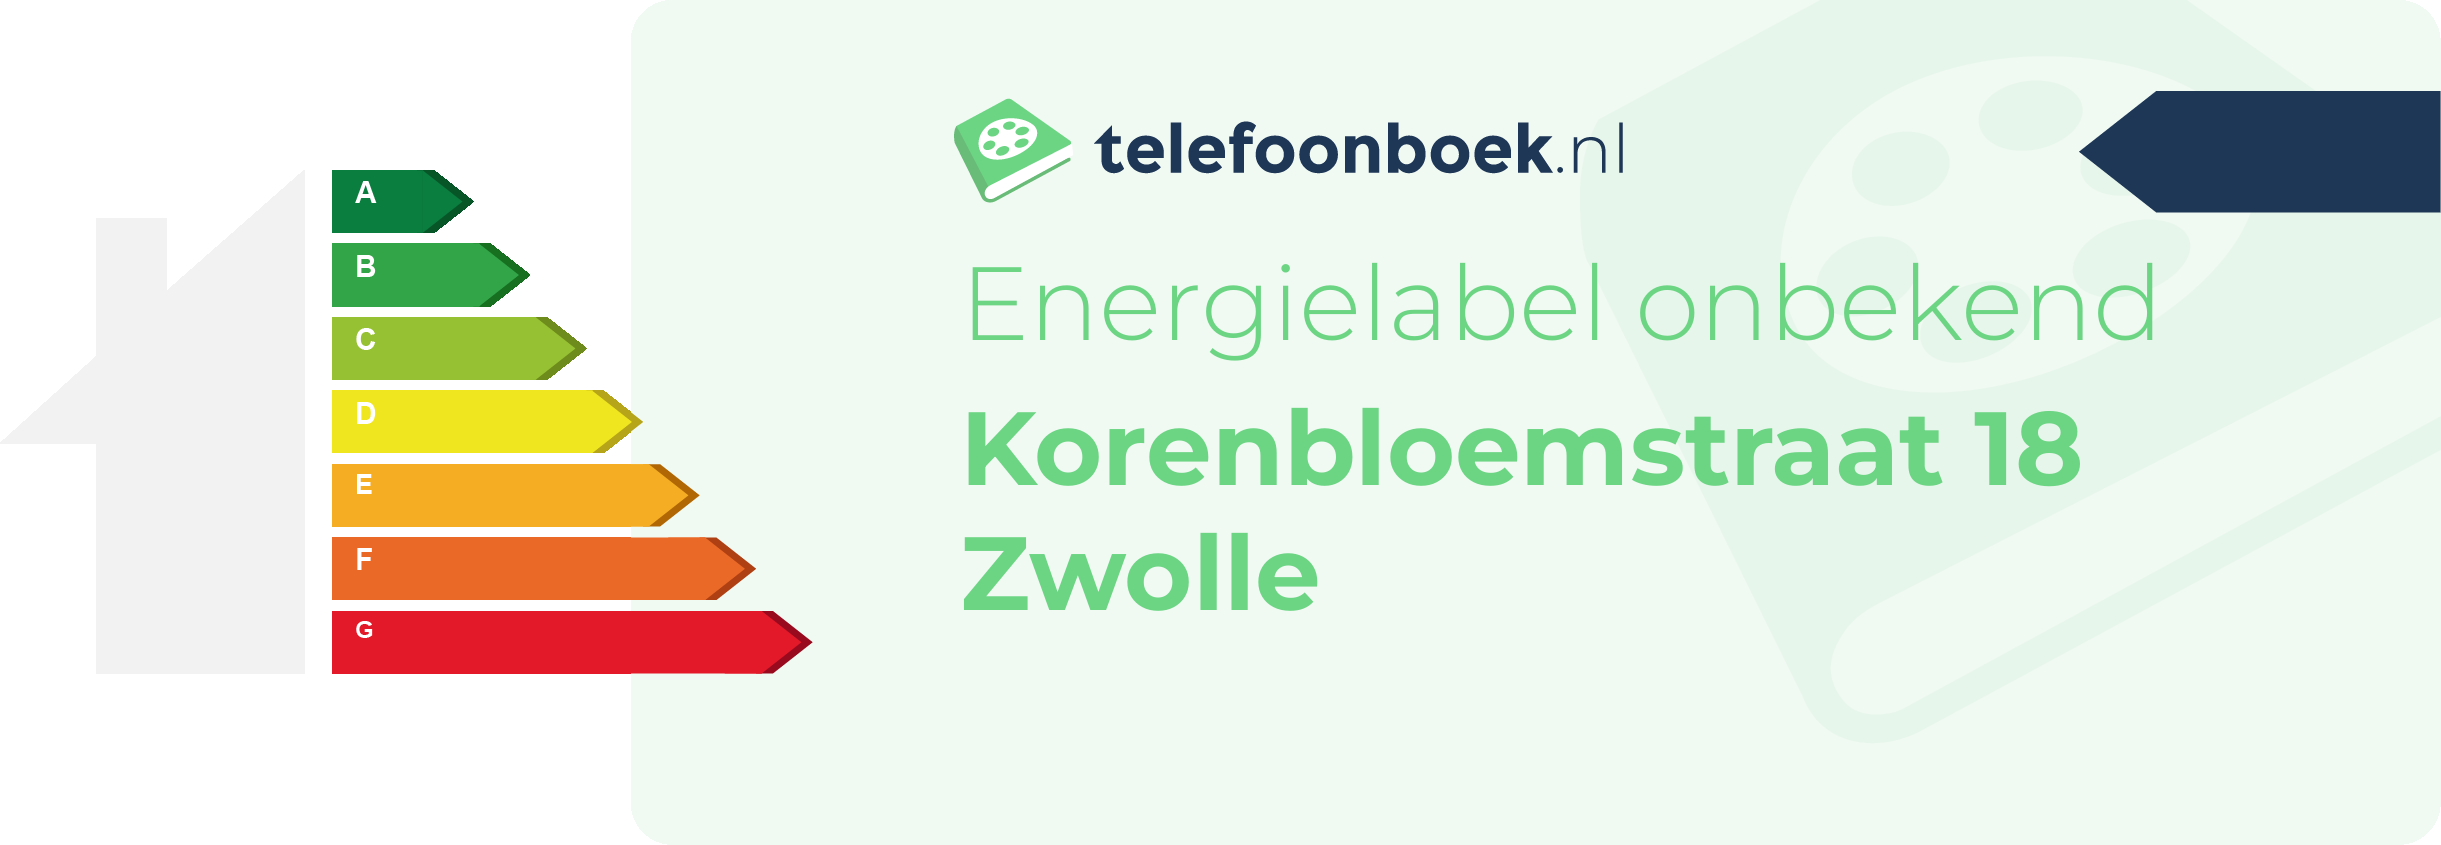 Energielabel Korenbloemstraat 18 Zwolle